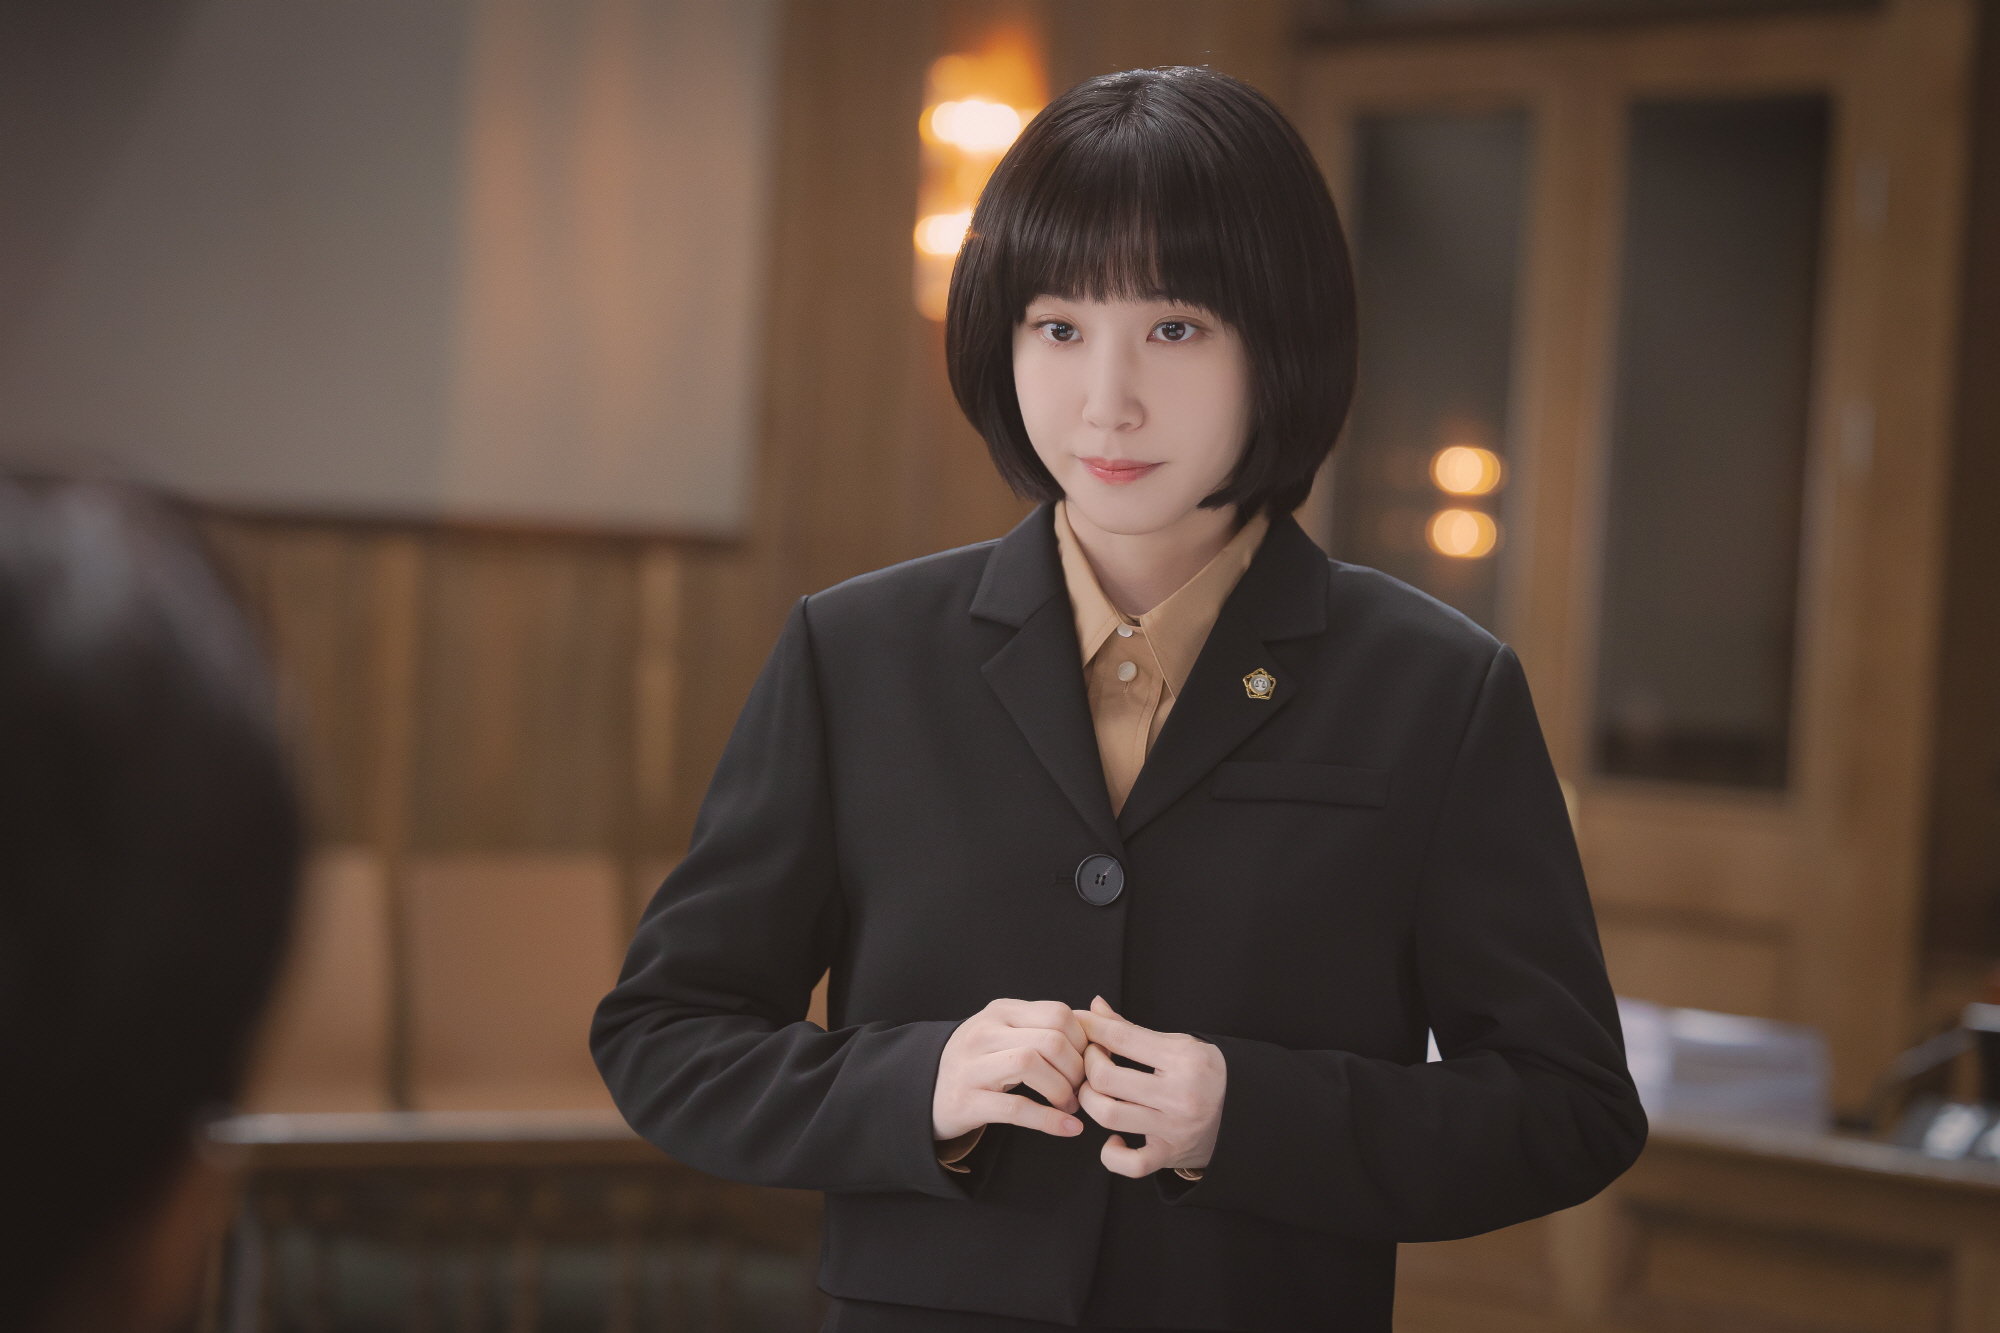 Cốt truyện mới lạ và chứa đựng nhiều thông điệp nhân văn giúp Nữ luật sư kỳ lạ Woo Young Woo nhận được nhiều lời khen của khán giả.